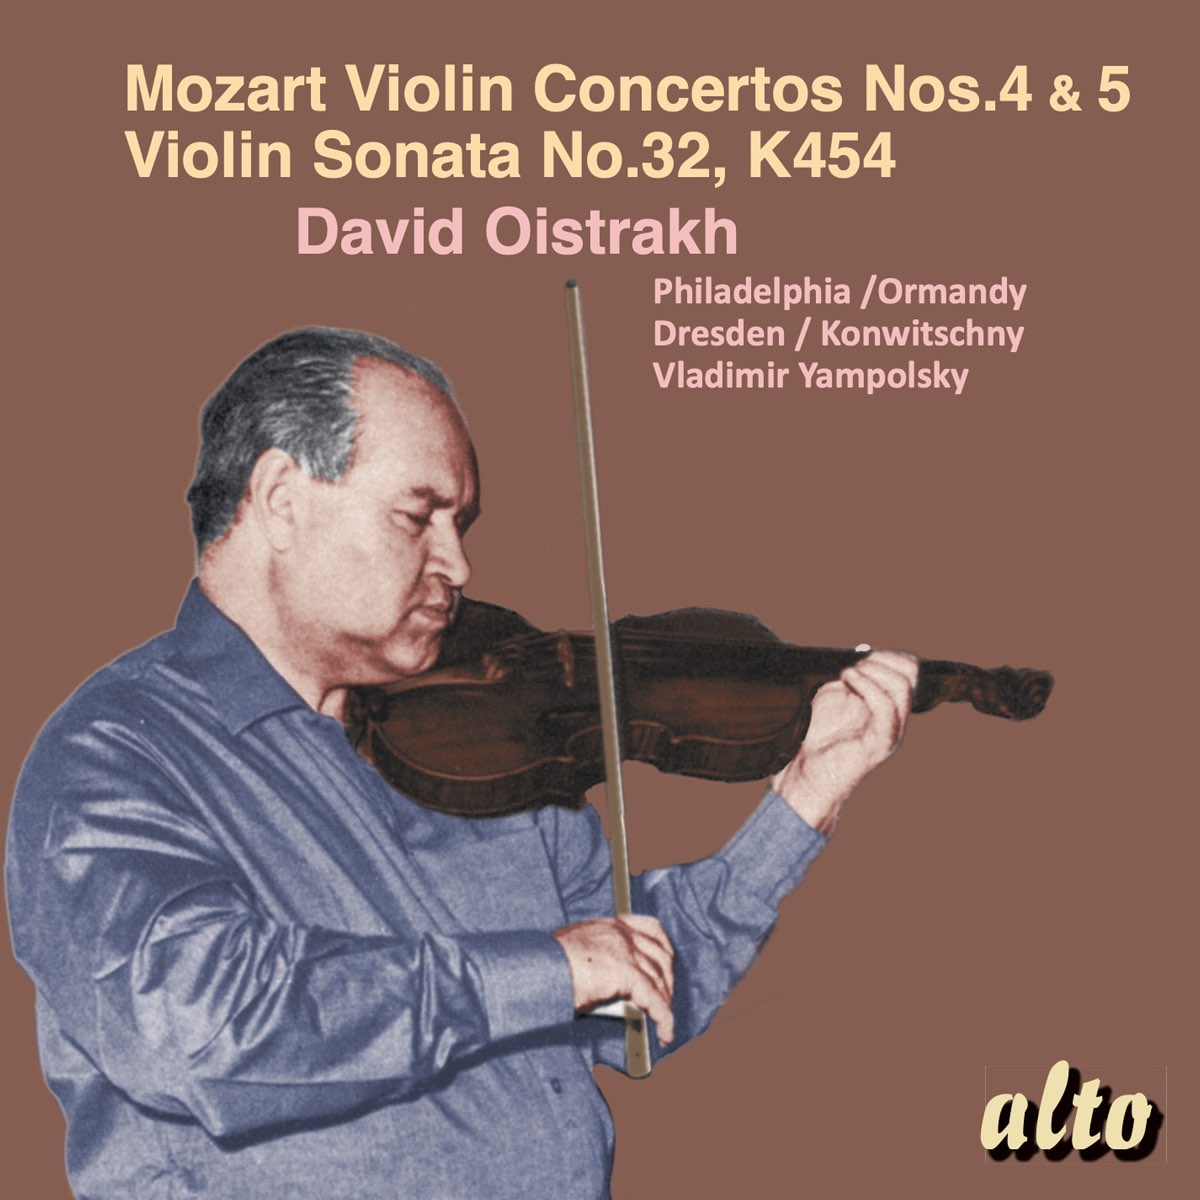 Mozart: Violin Concertos Nos. 4 & 5, Violin Sonata No. 32, K. 454 - Album  by David Oistrakh - Apple Music